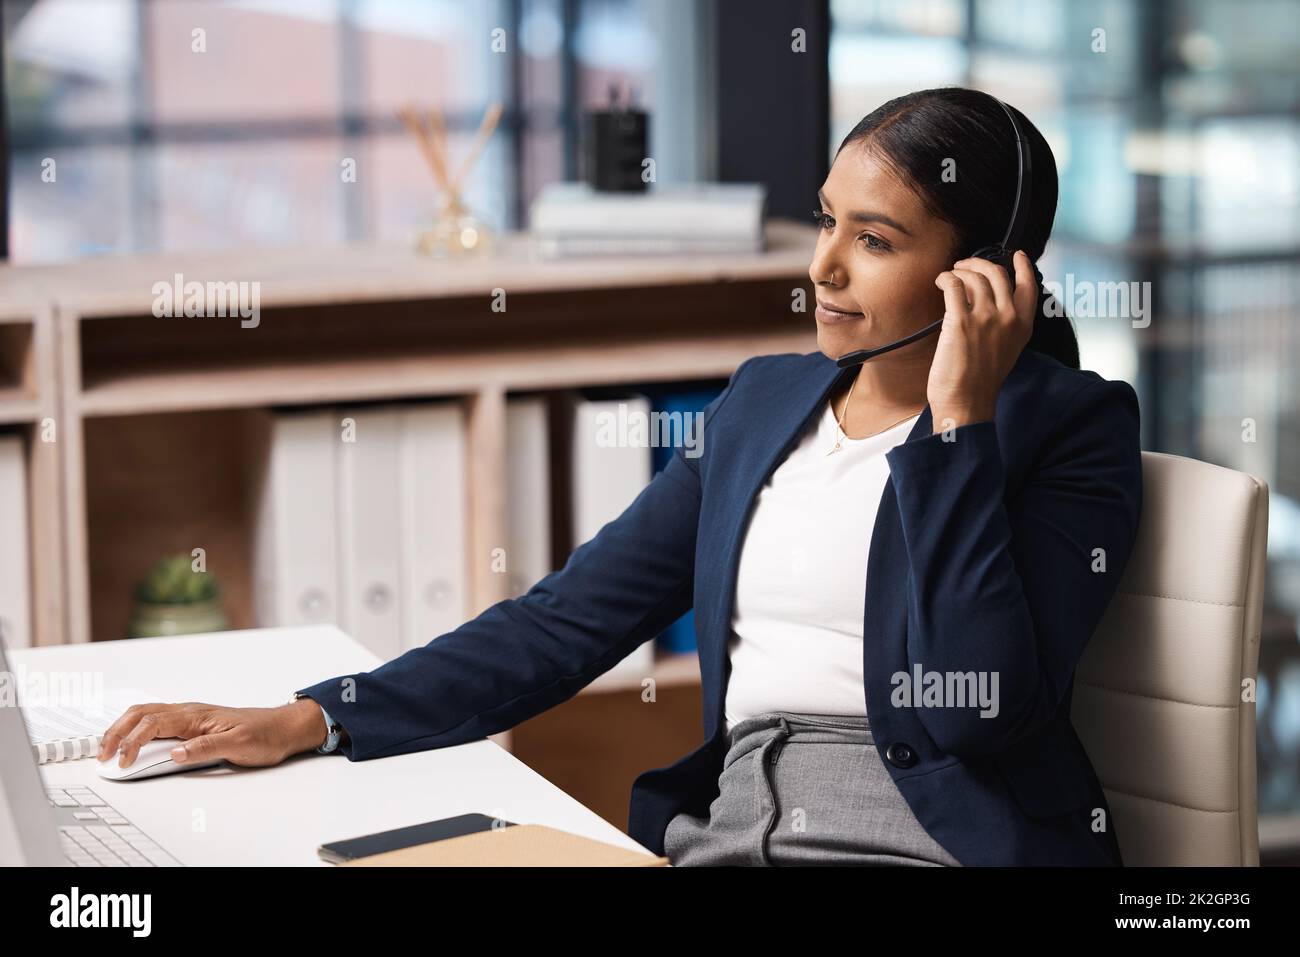 Übernahme ihrer Rolle als effiziente Agentin. Aufnahme einer jungen Geschäftsfrau, die an einem Computer in einem Callcenter arbeitet. Stockfoto